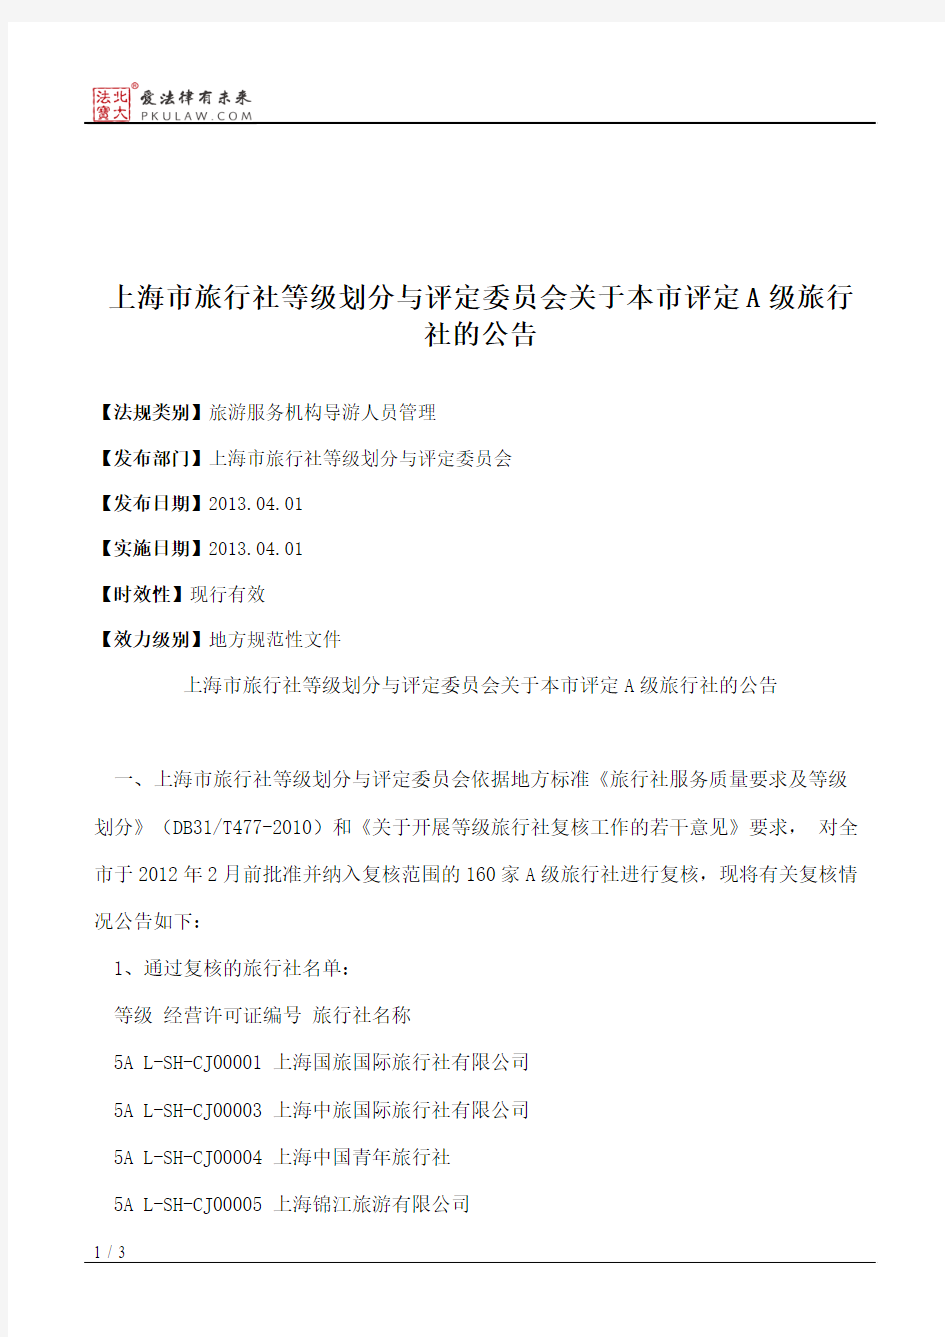 上海市旅行社等级划分与评定委员会关于本市评定A级旅行社的公告